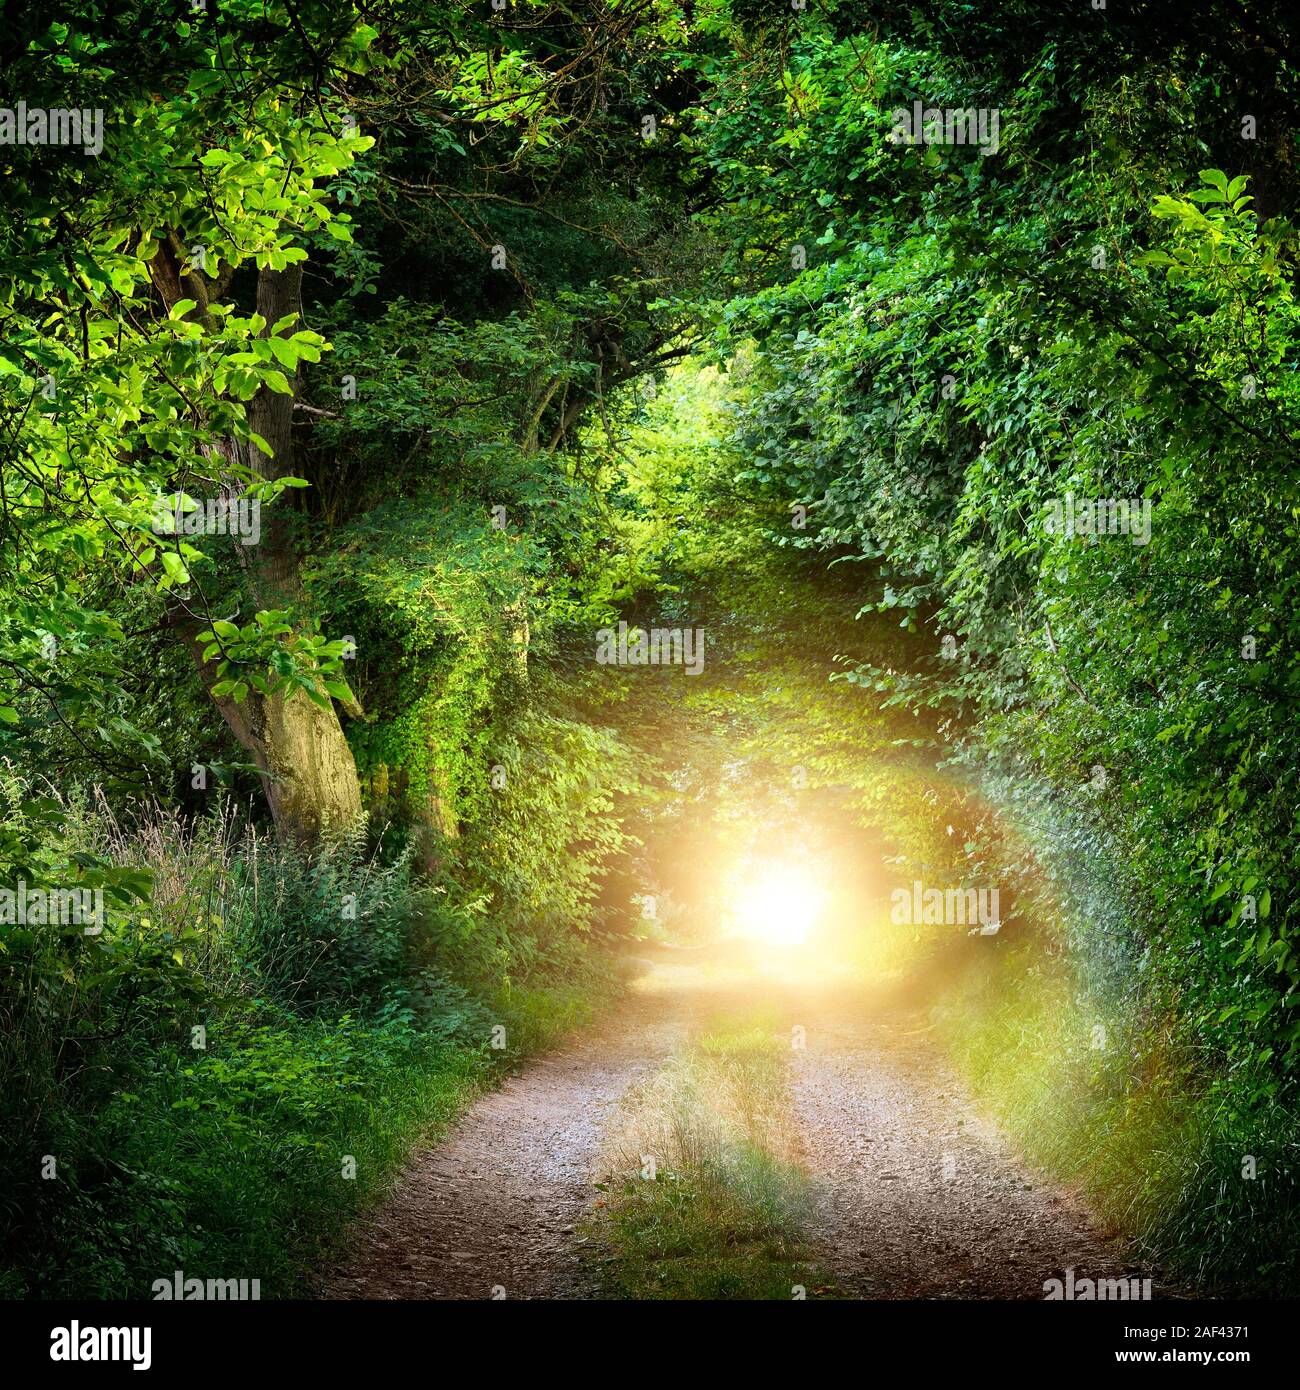 La fantasía con un paisaje verde túnel de árboles iluminados en un camino forestal que conduce a una luz misteriosa. Iluminado por la noche al aire libre. Foto de stock